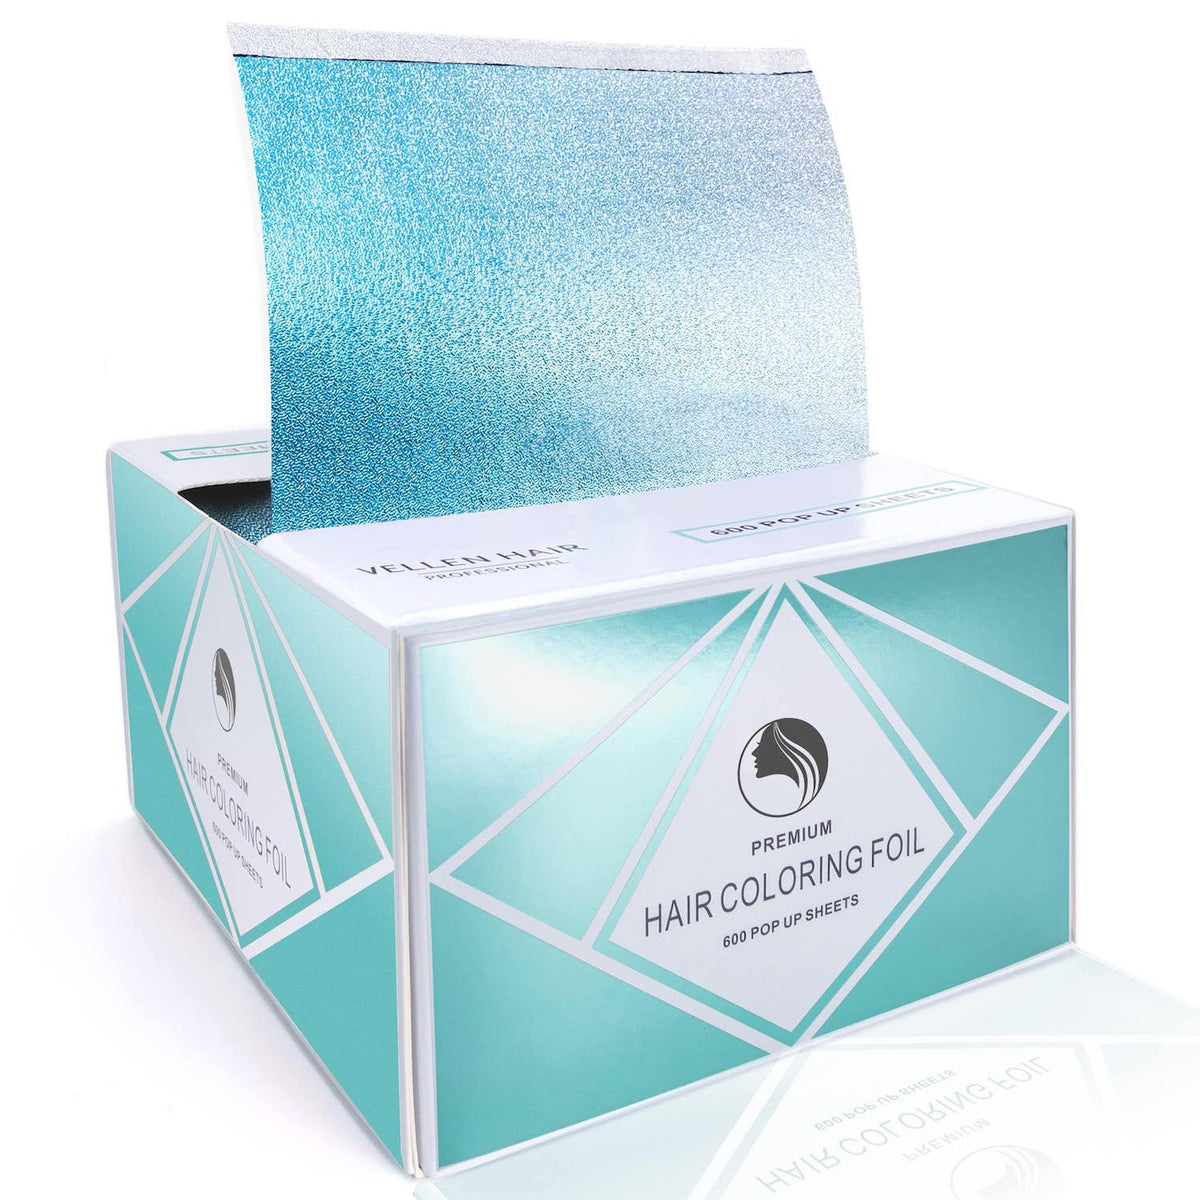 5x11 Pop Up Foil Sheets - 600 Sheets - Aqua – Vellen-Hair